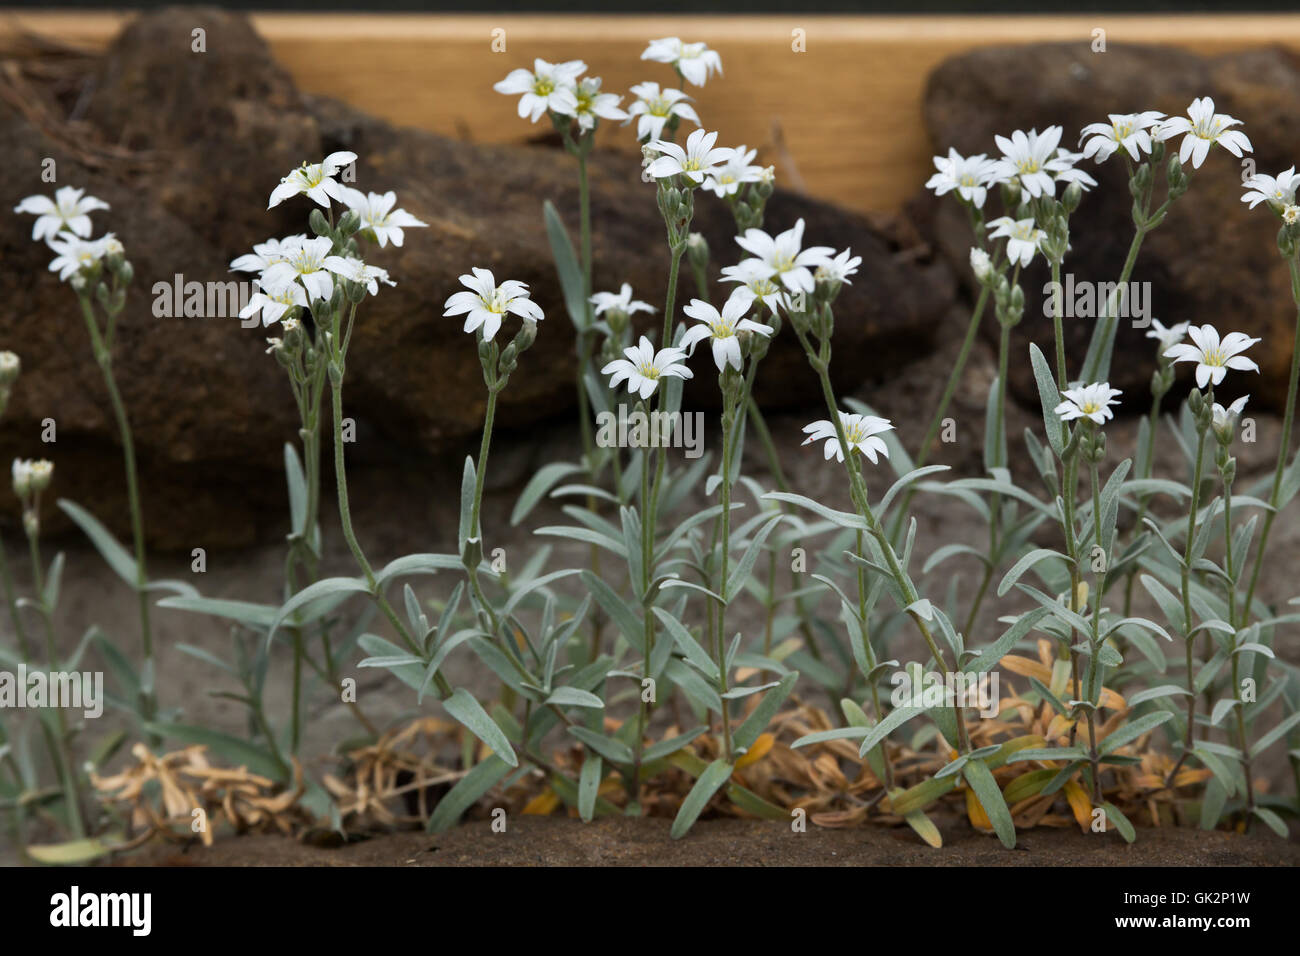 Snow-in-summer (Cerastium tomentosum). Flowering plant. Stock Photo